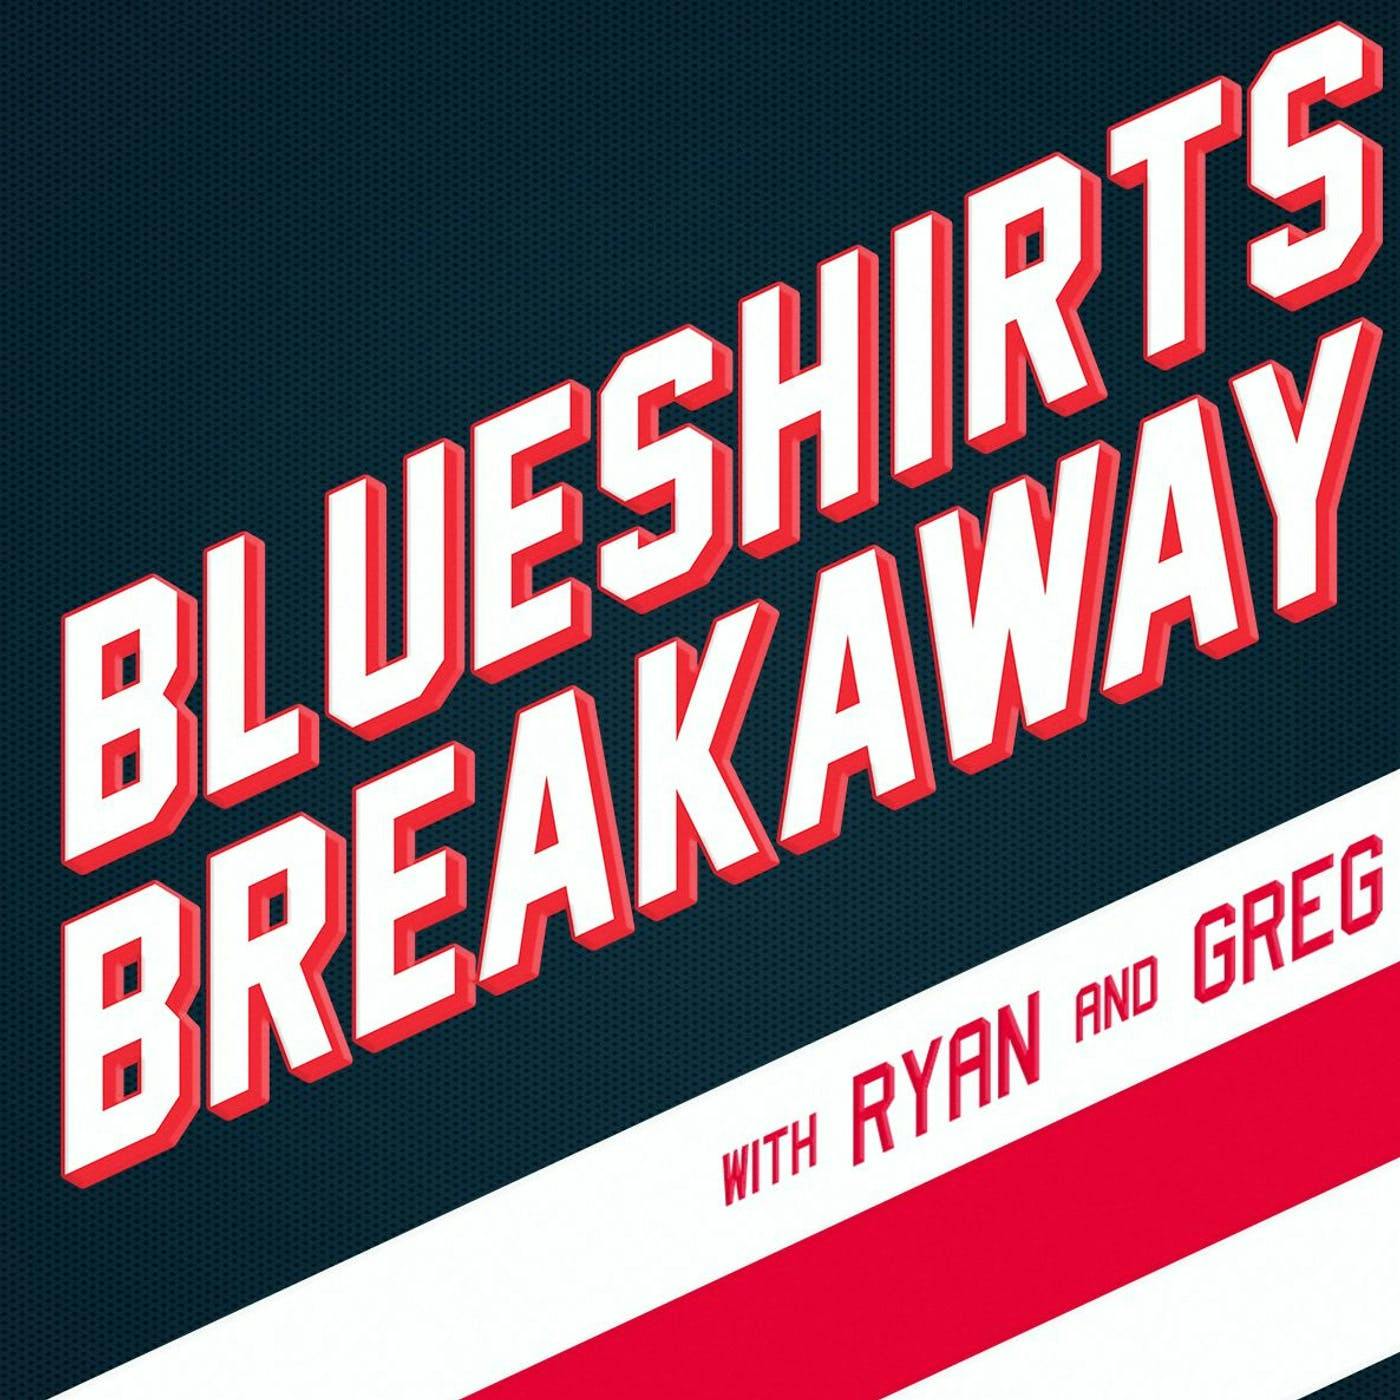 Blueshirts Breakaway EP 125 - AV GONE, KOVY IN, Alexa Gruschow & HockeyStatMiner